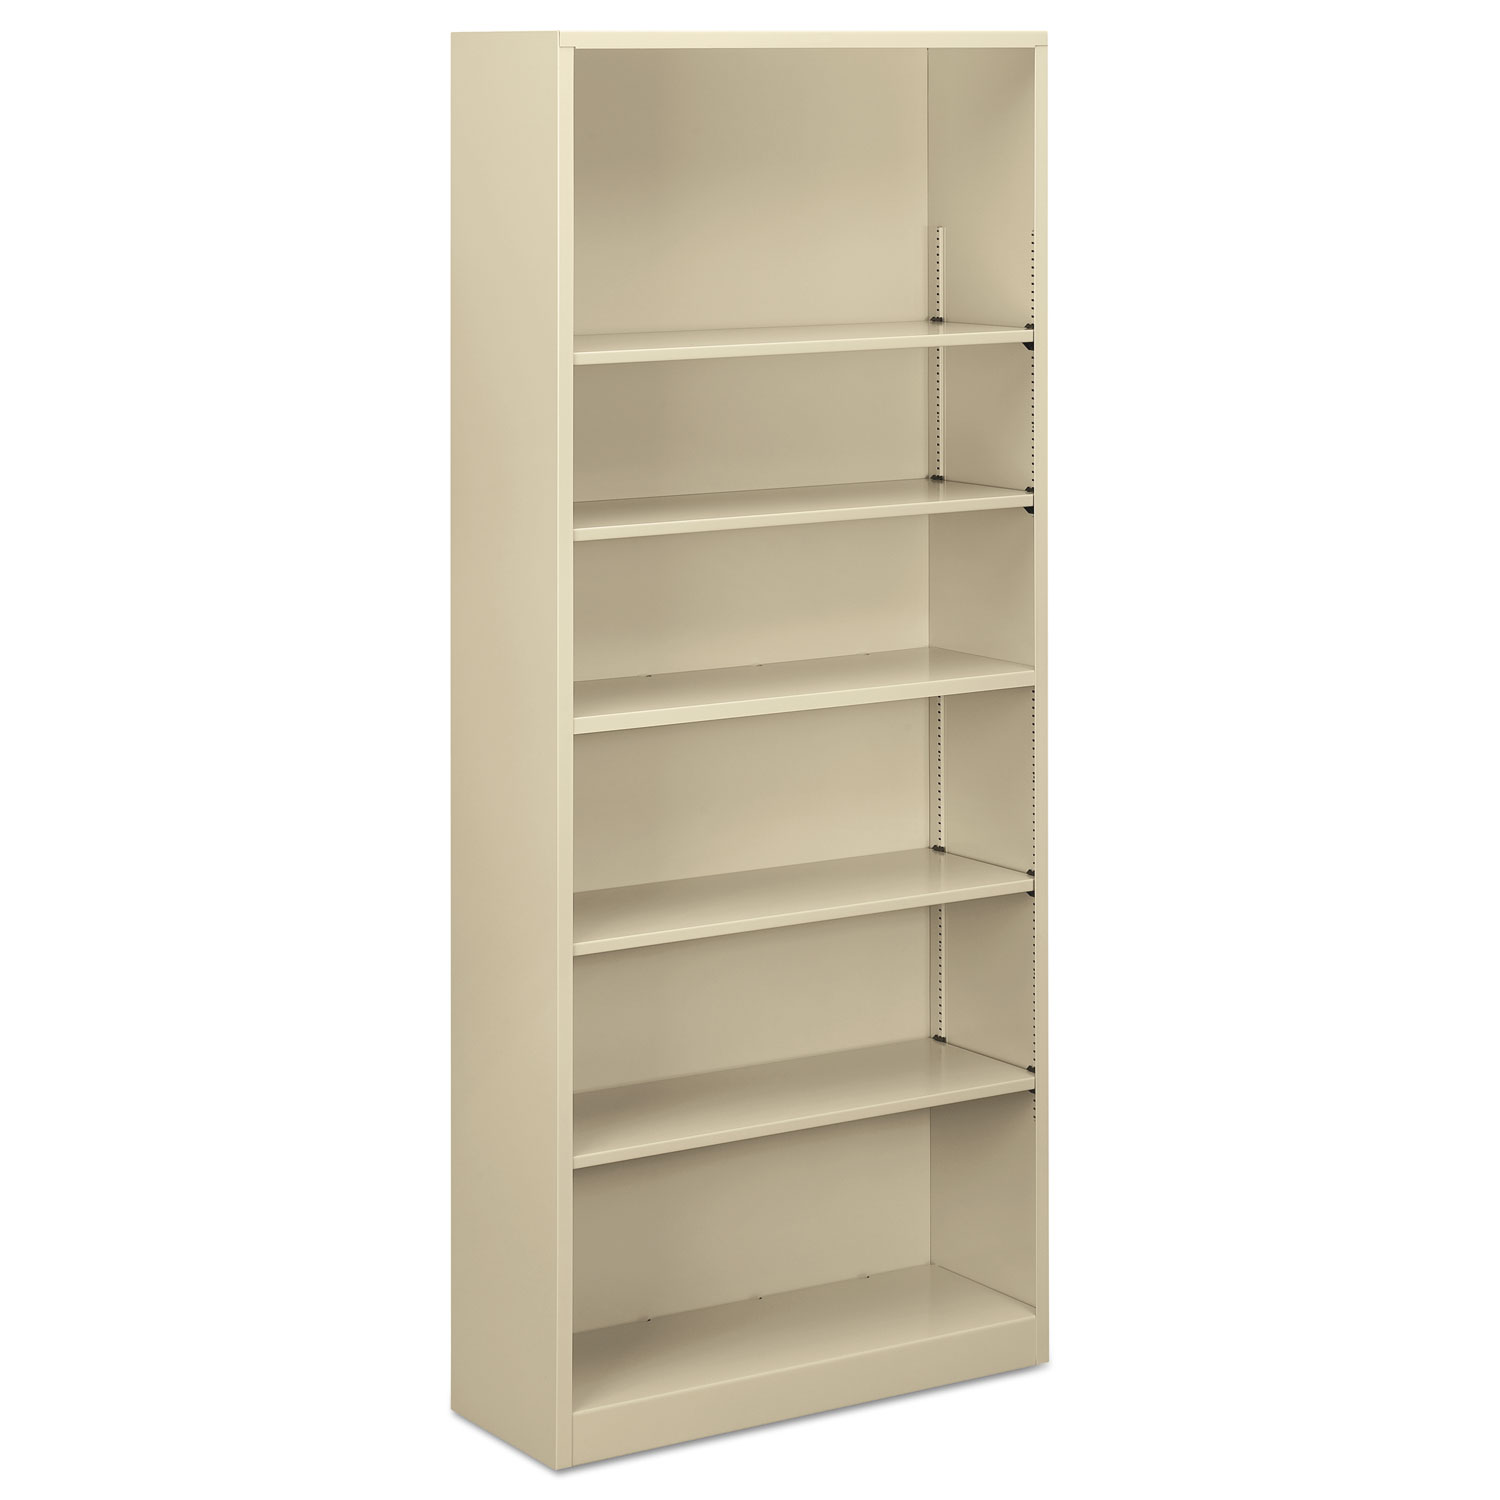  Alera ALEBCM68235PY Steel Bookcase, 6-Shelf, 34.5w x 12.63d x 81.13h, Putty (ALEBCM68235PY) 